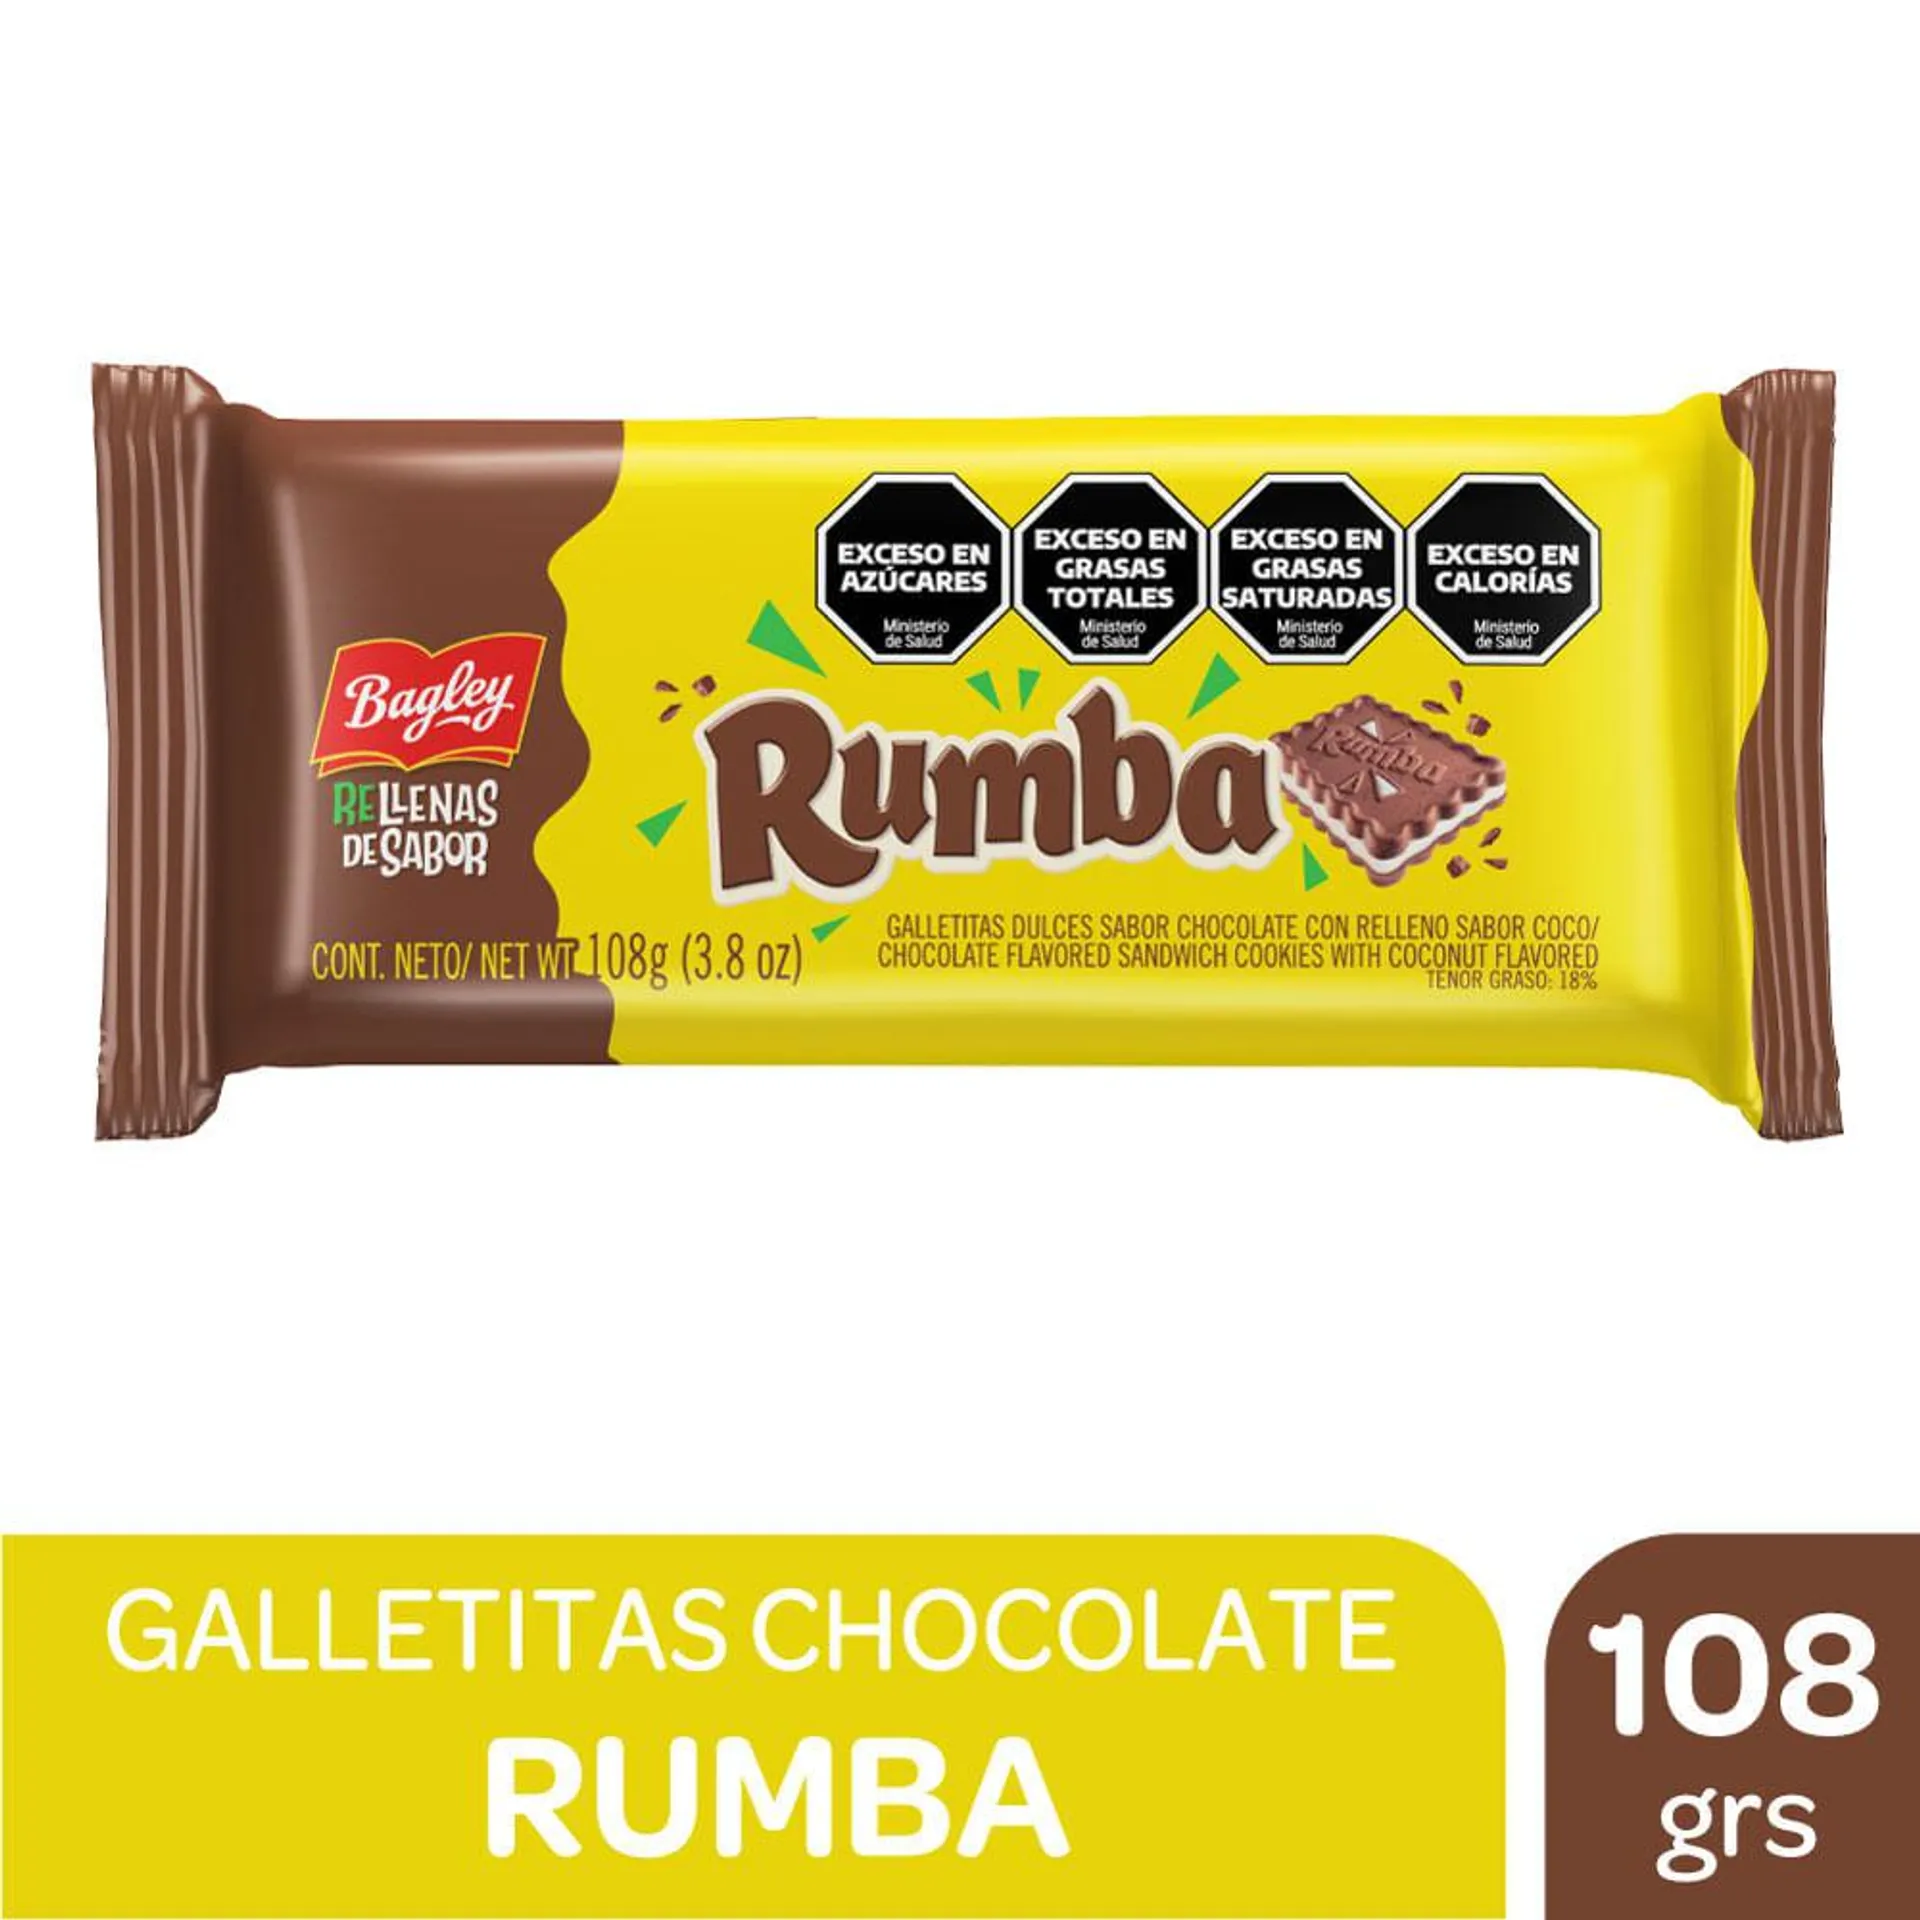 Galletitas Rumba chocolate rellenas vainilla 108 g. - Carrefour - Las mejores ofertas en supermercados